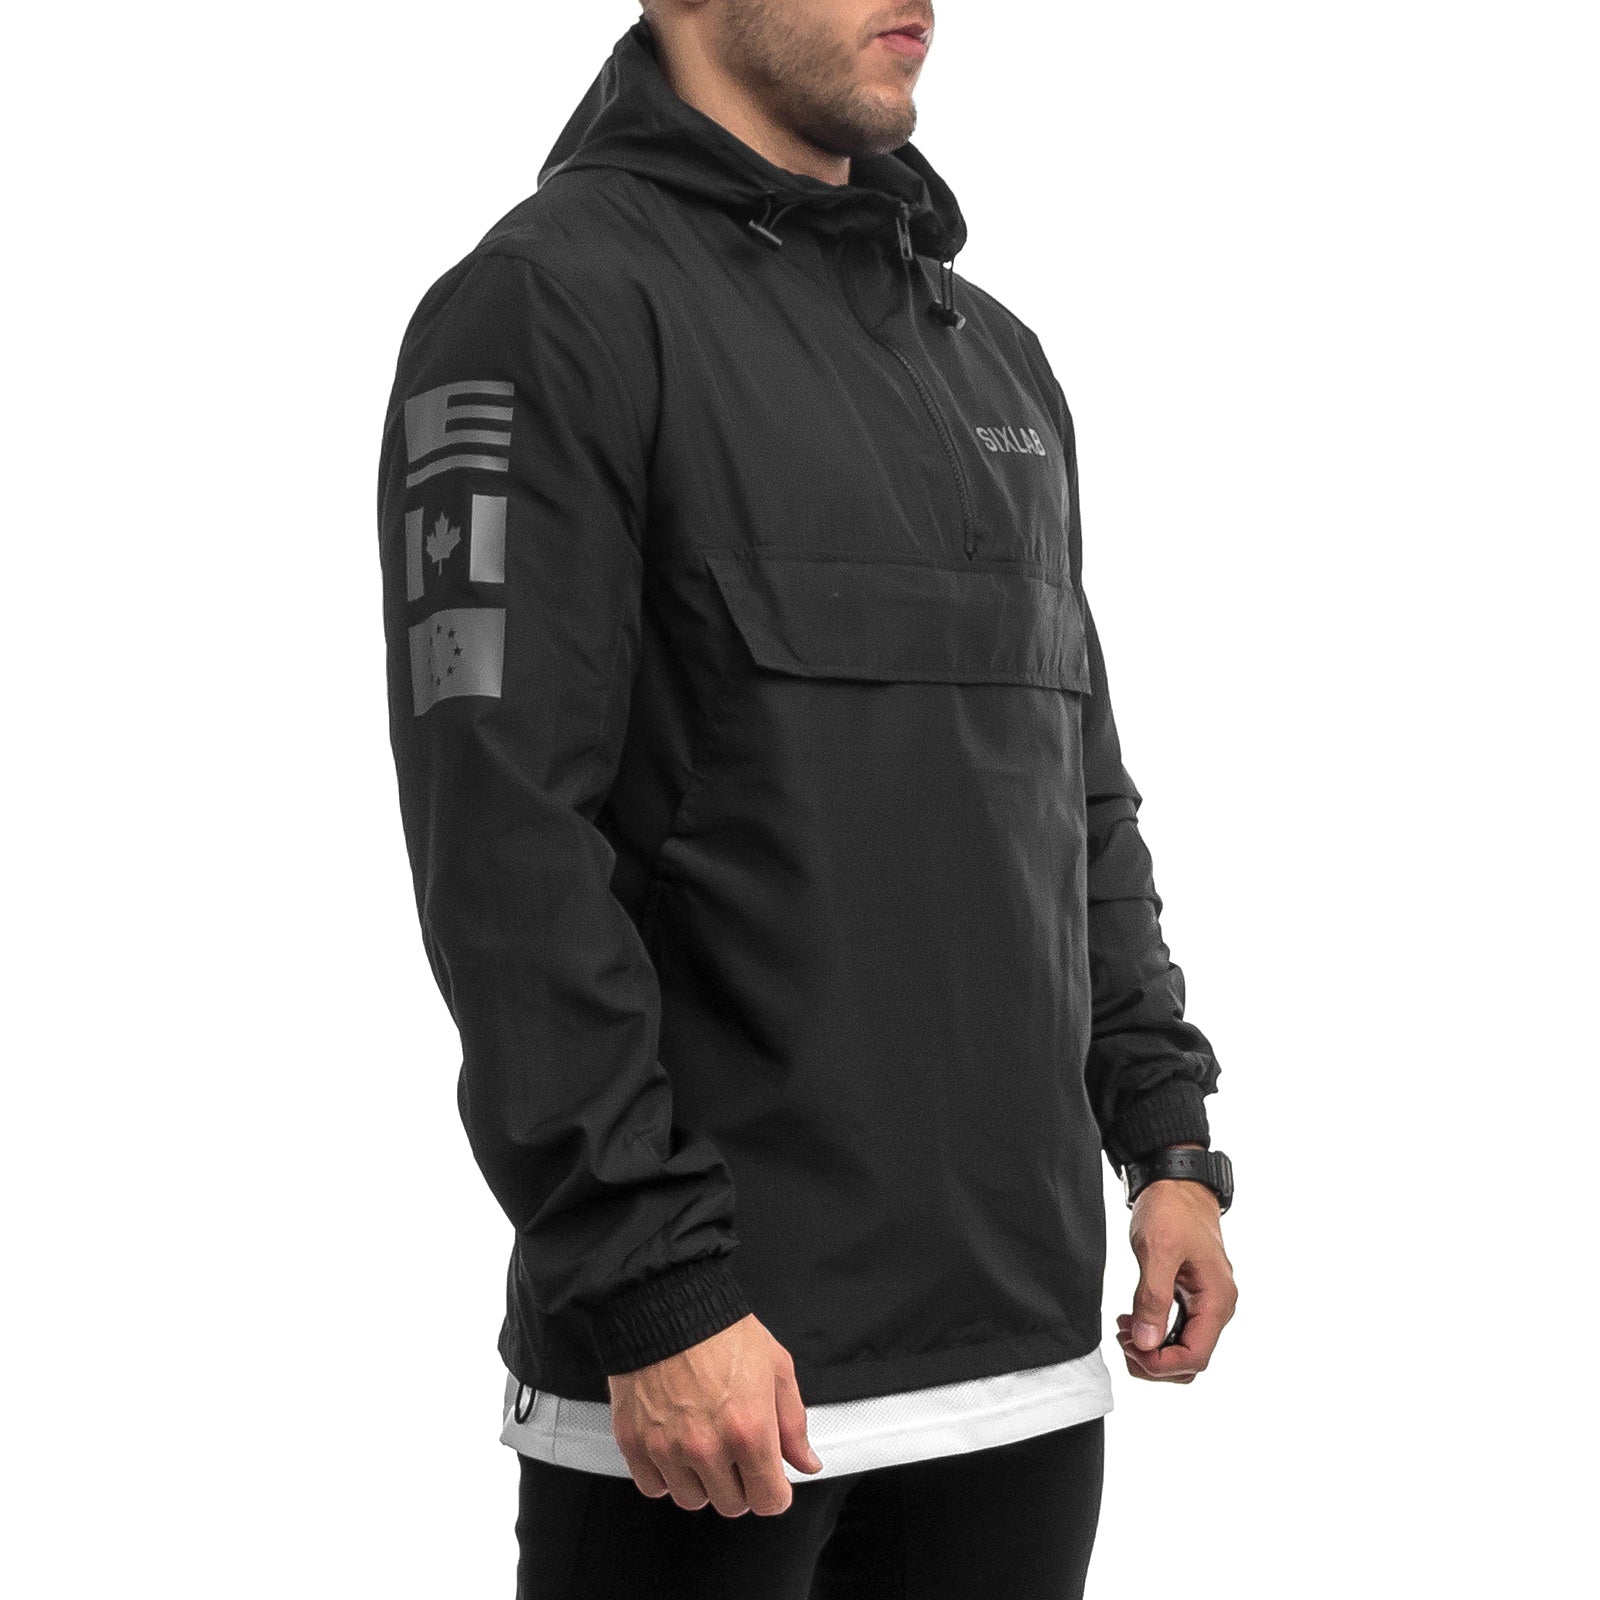 Trademark Half-Zip Jacket - black